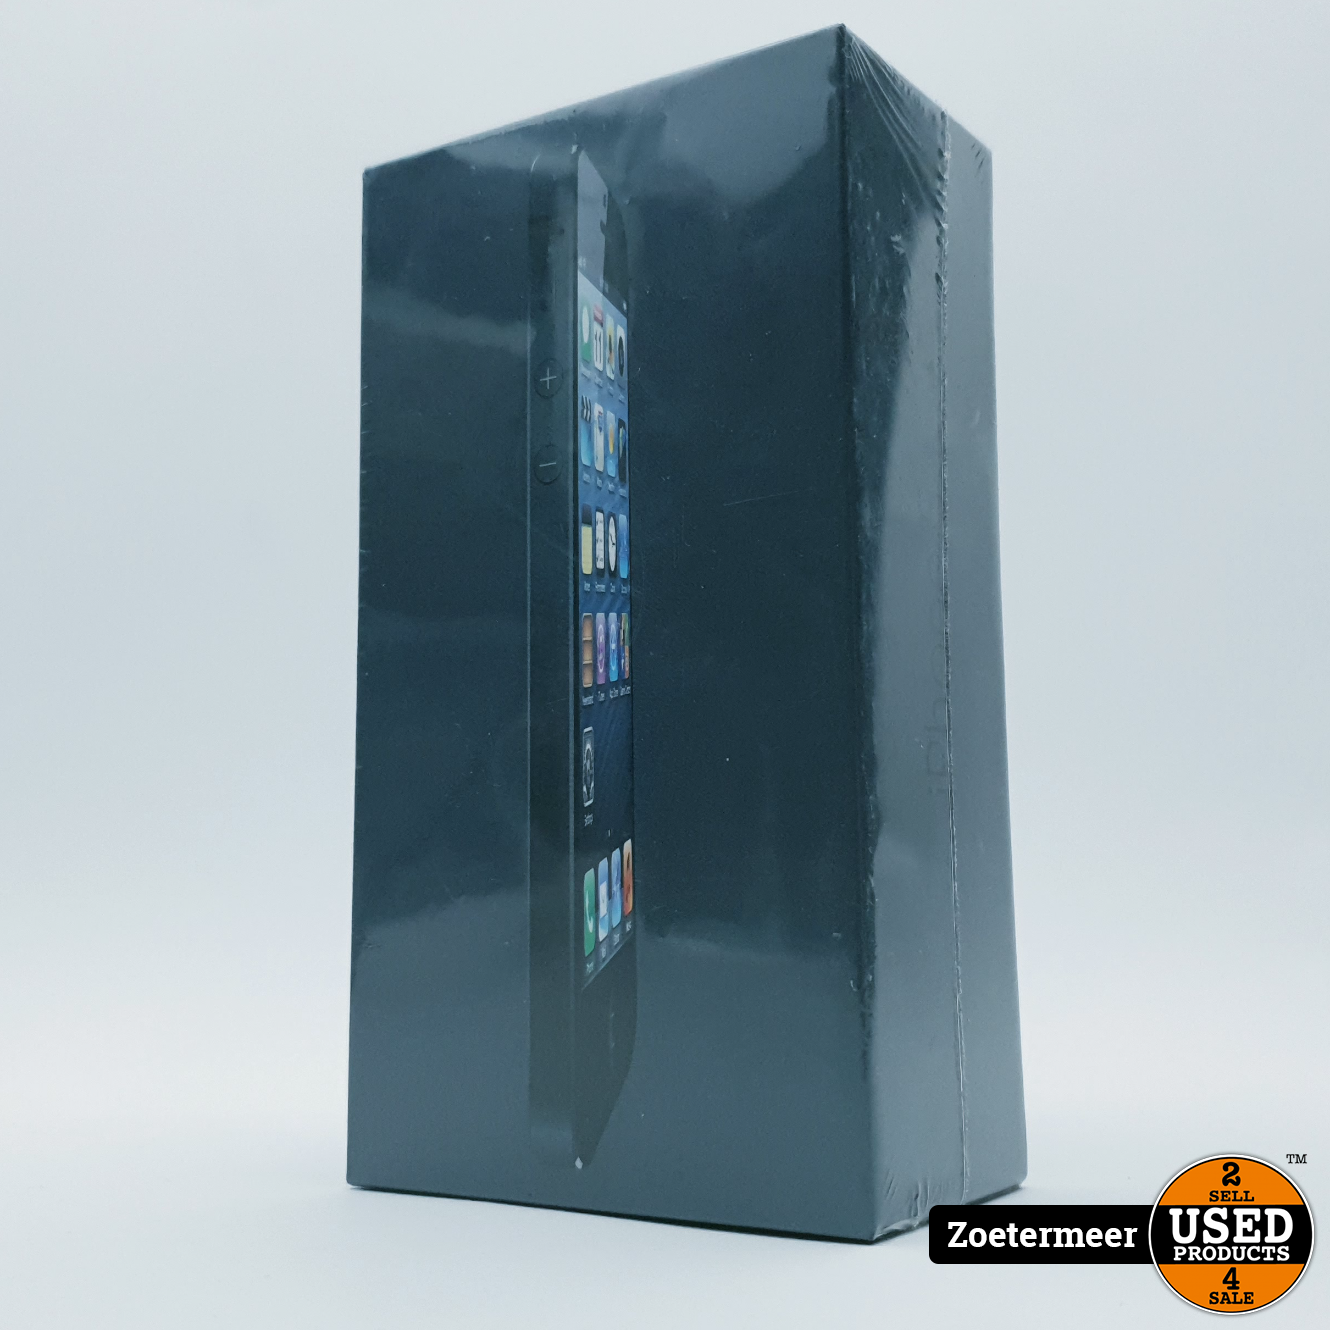 Apple iPhone 5 32GB Zwart || In Seal - Used Zoetermeer